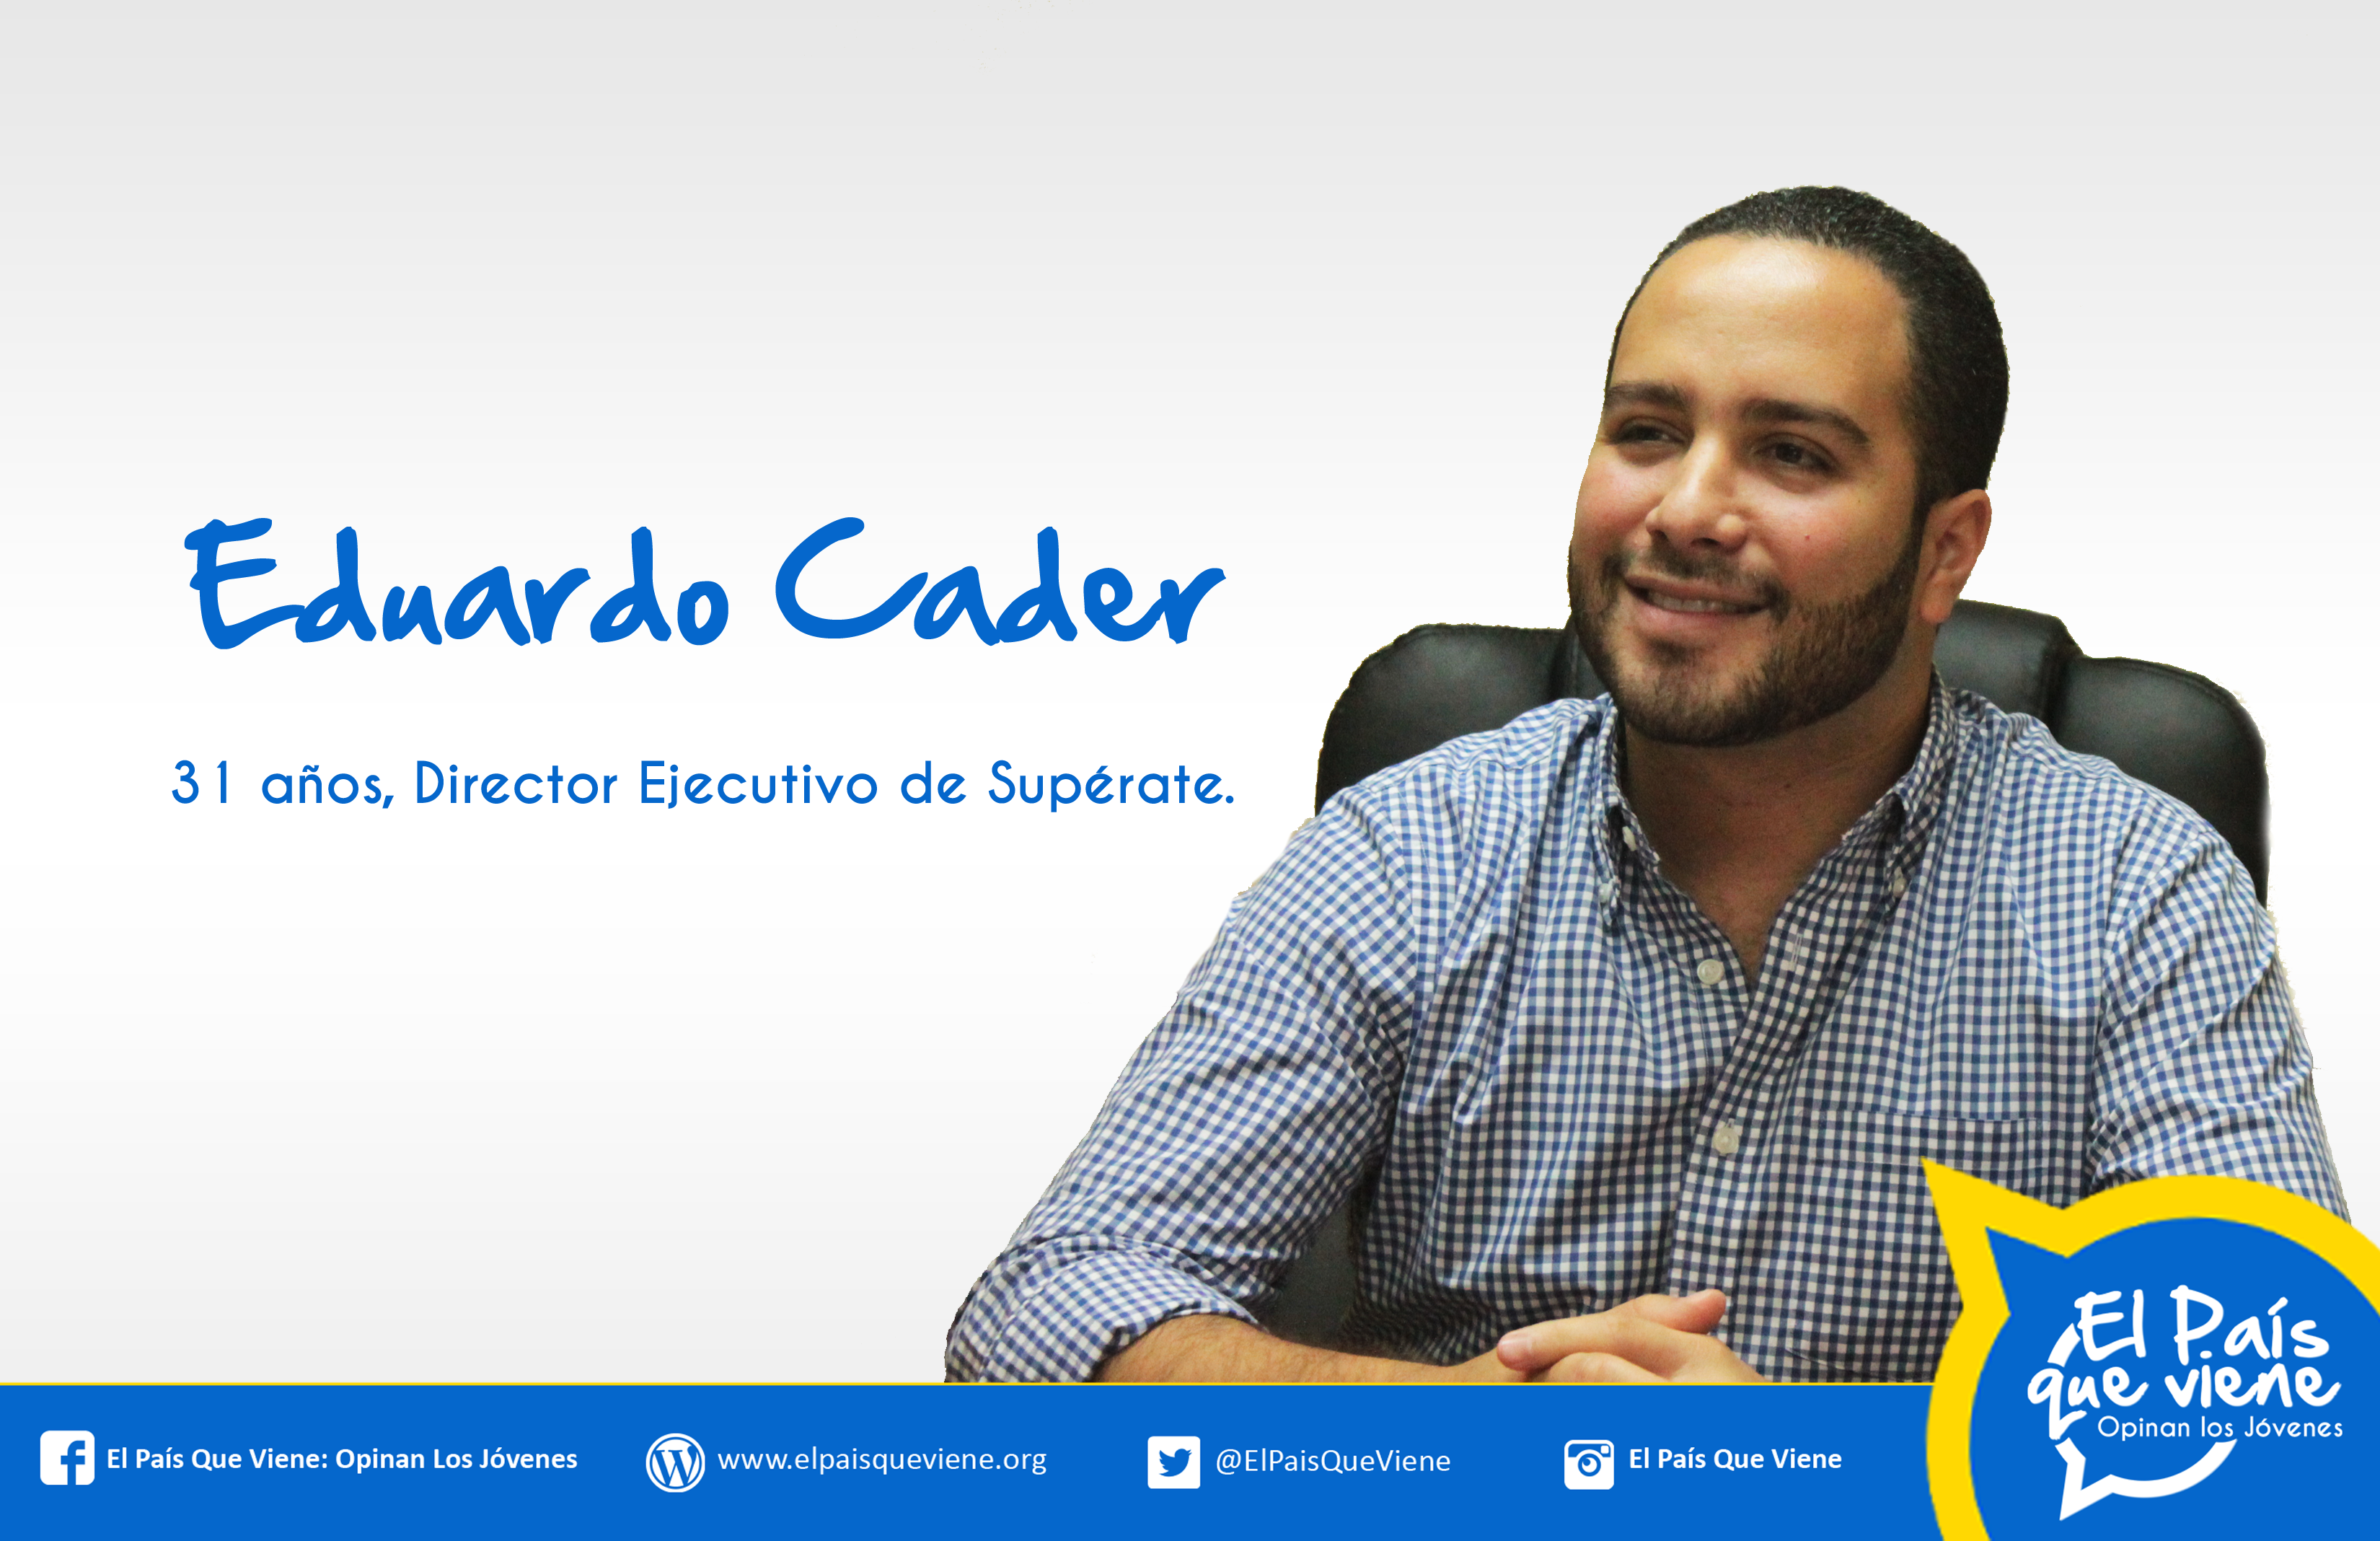 1 Eduardo Cader